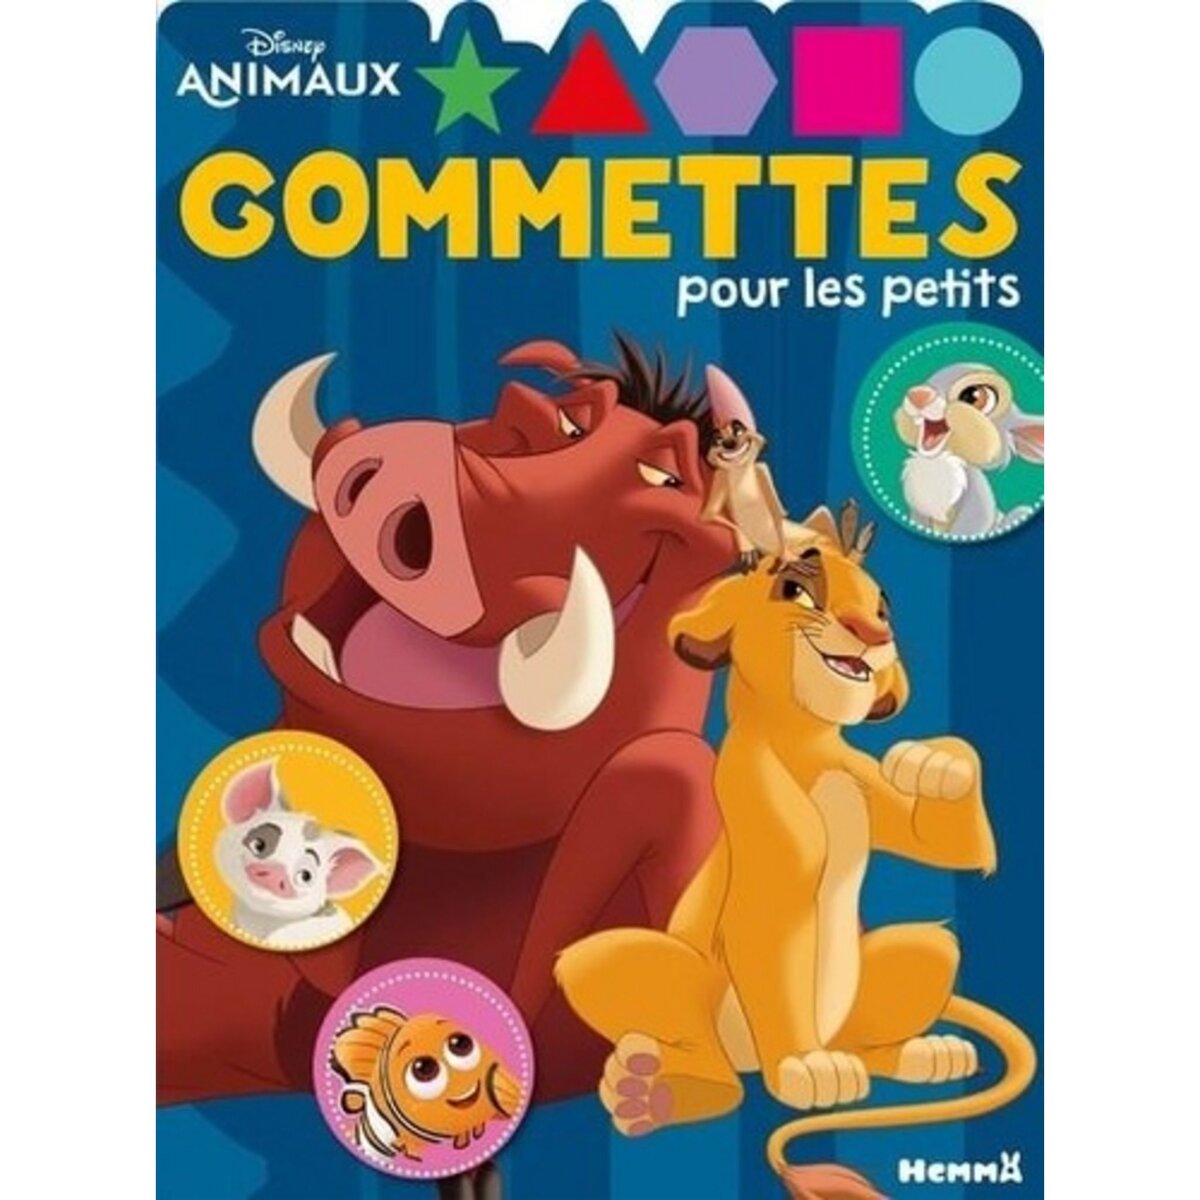 DISNEY ANIMAUX - GOMMETTES POUR LES PETITS, Disney pas cher 